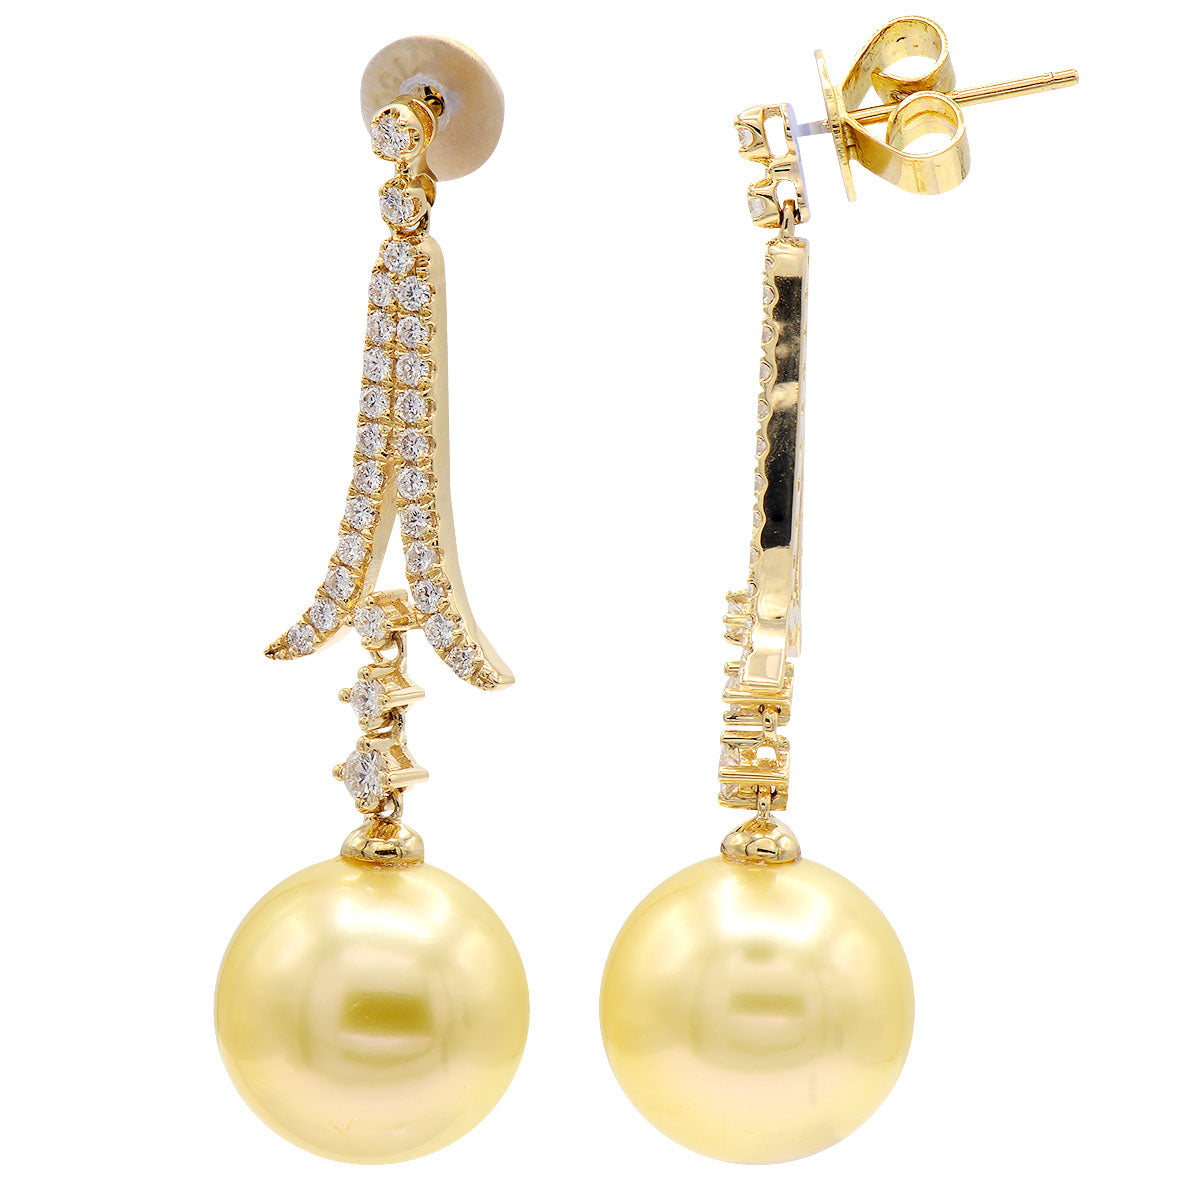 18KY Golden South Sea Pearl Earrings, 12-13mm